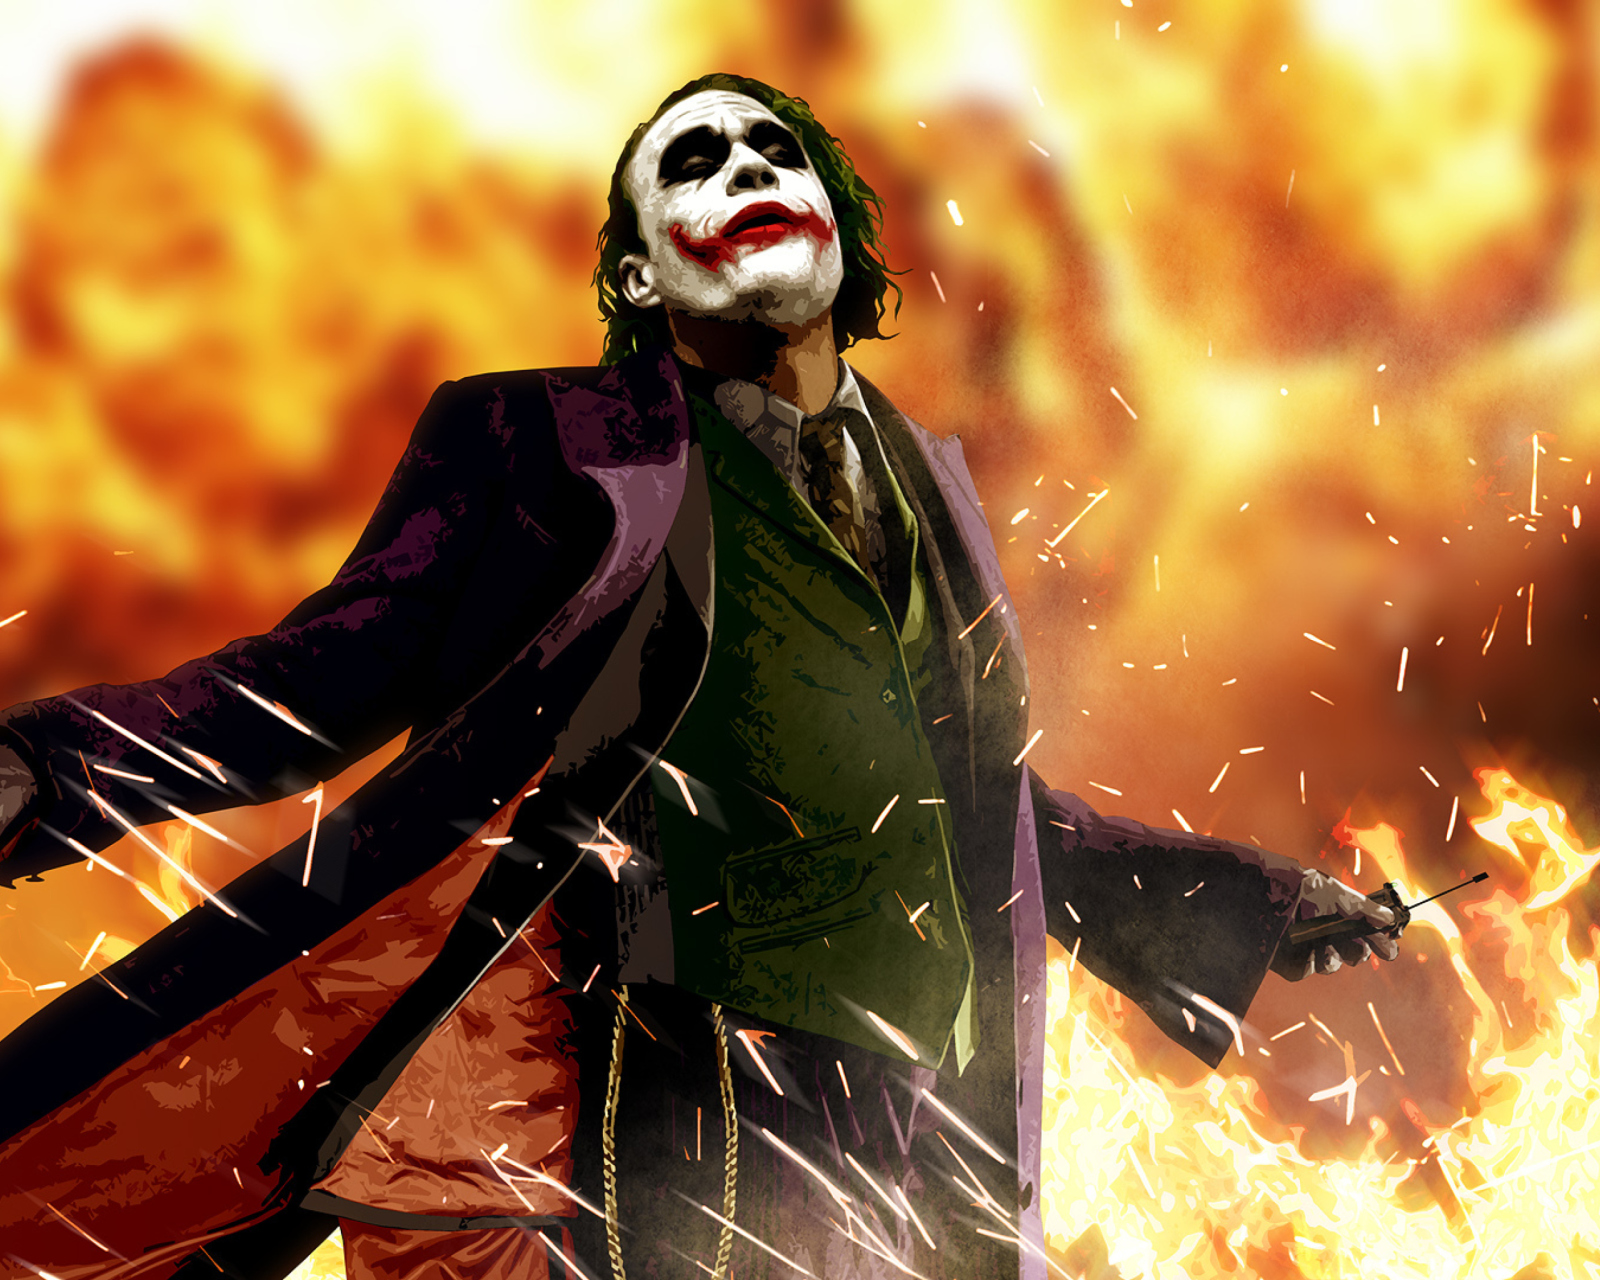 Heath Ledger As Joker - The Dark Knight Movie wallpaper 1600x1280